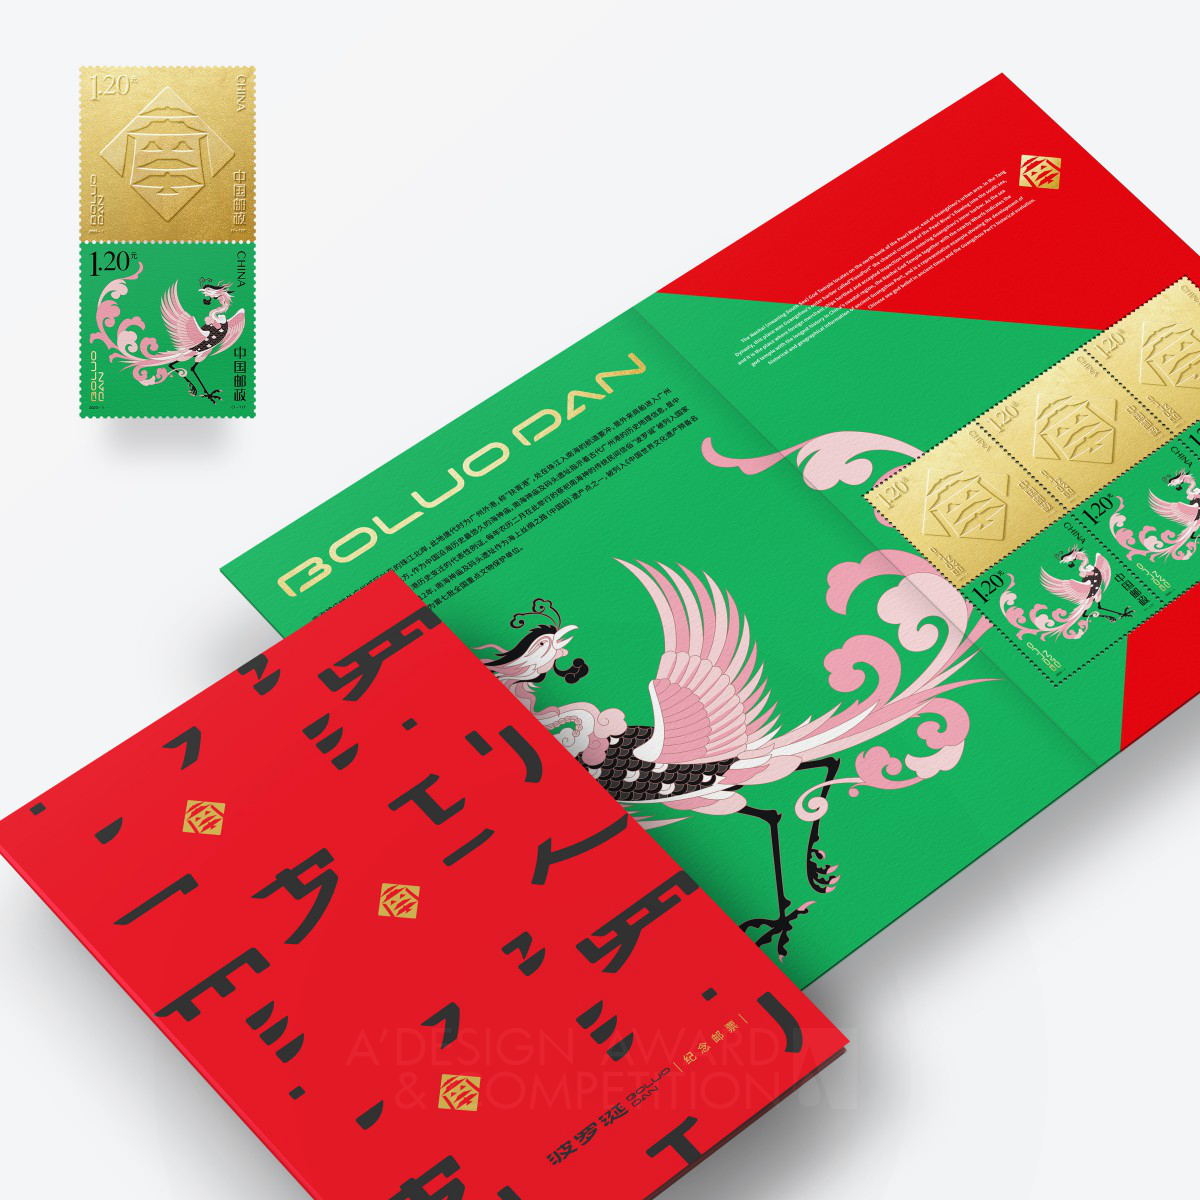 Boluo Dan Logo And Brand Design by Guangzhou Cheung Ying Design Co., Ltd.